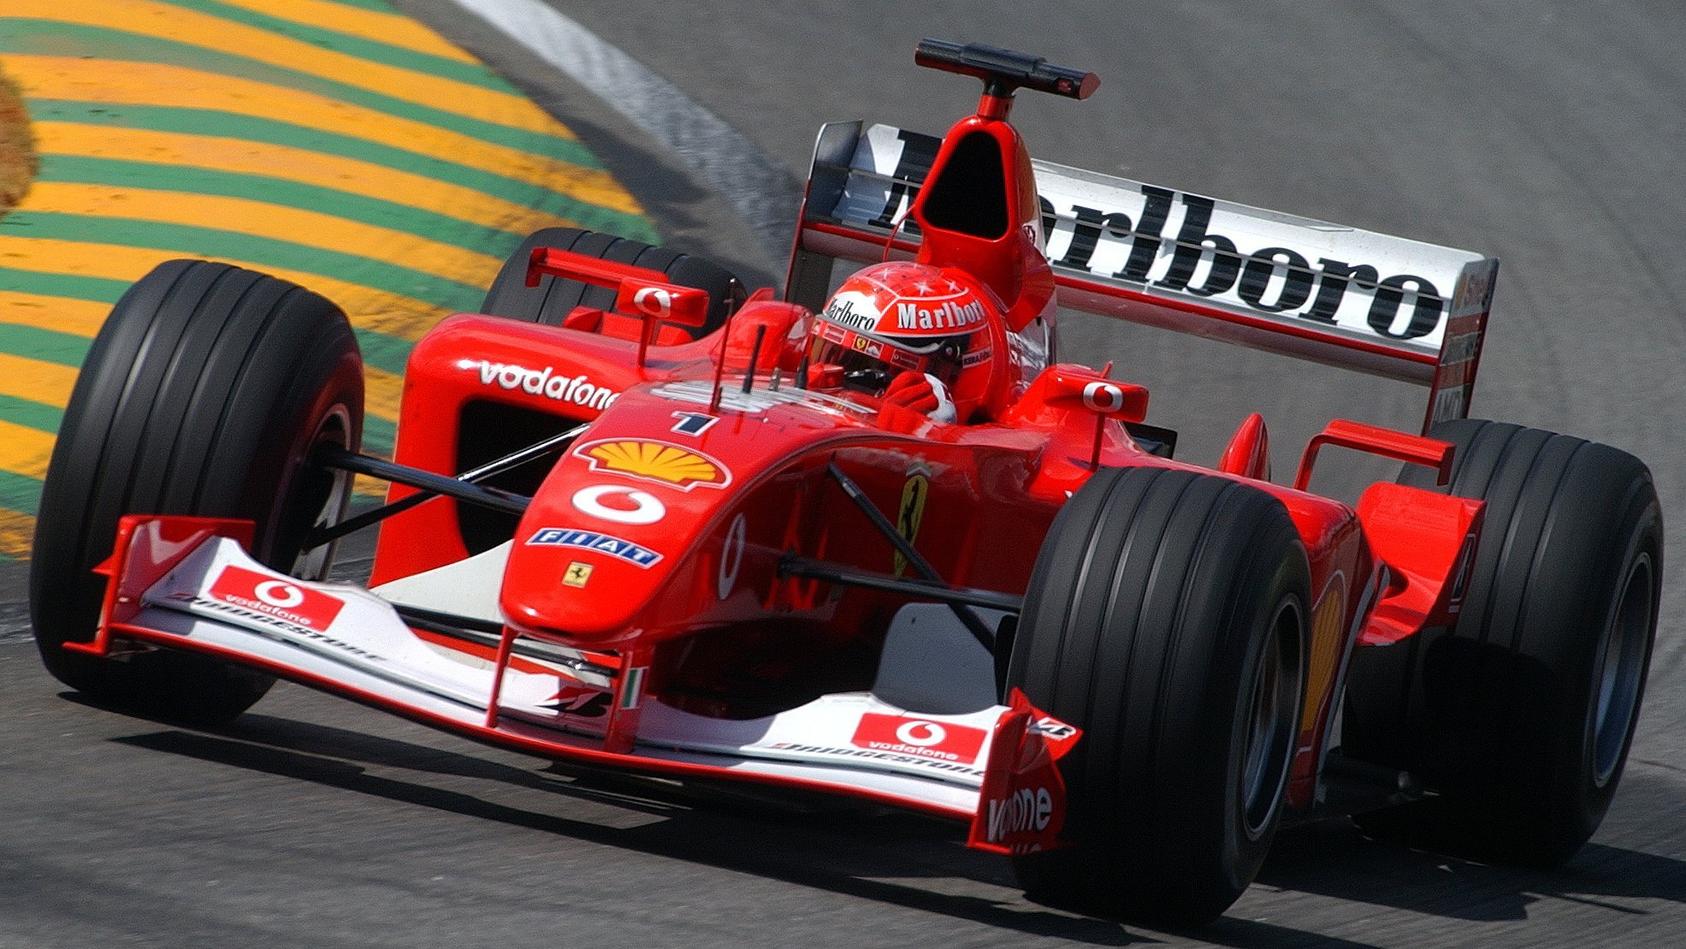 ARCHIV - 29.03.2002, Brasilien, Sao Paulo: Formel-1-Pilot Michael Schumacher im Ferrari F2002 während eines Zeittrainings auf der Rennstrecke von Interlagos bei Sao Paulo. Der legendäre Rennwagen wird nun im Rahmen des Formel-1-Saisonfinales in Abu D